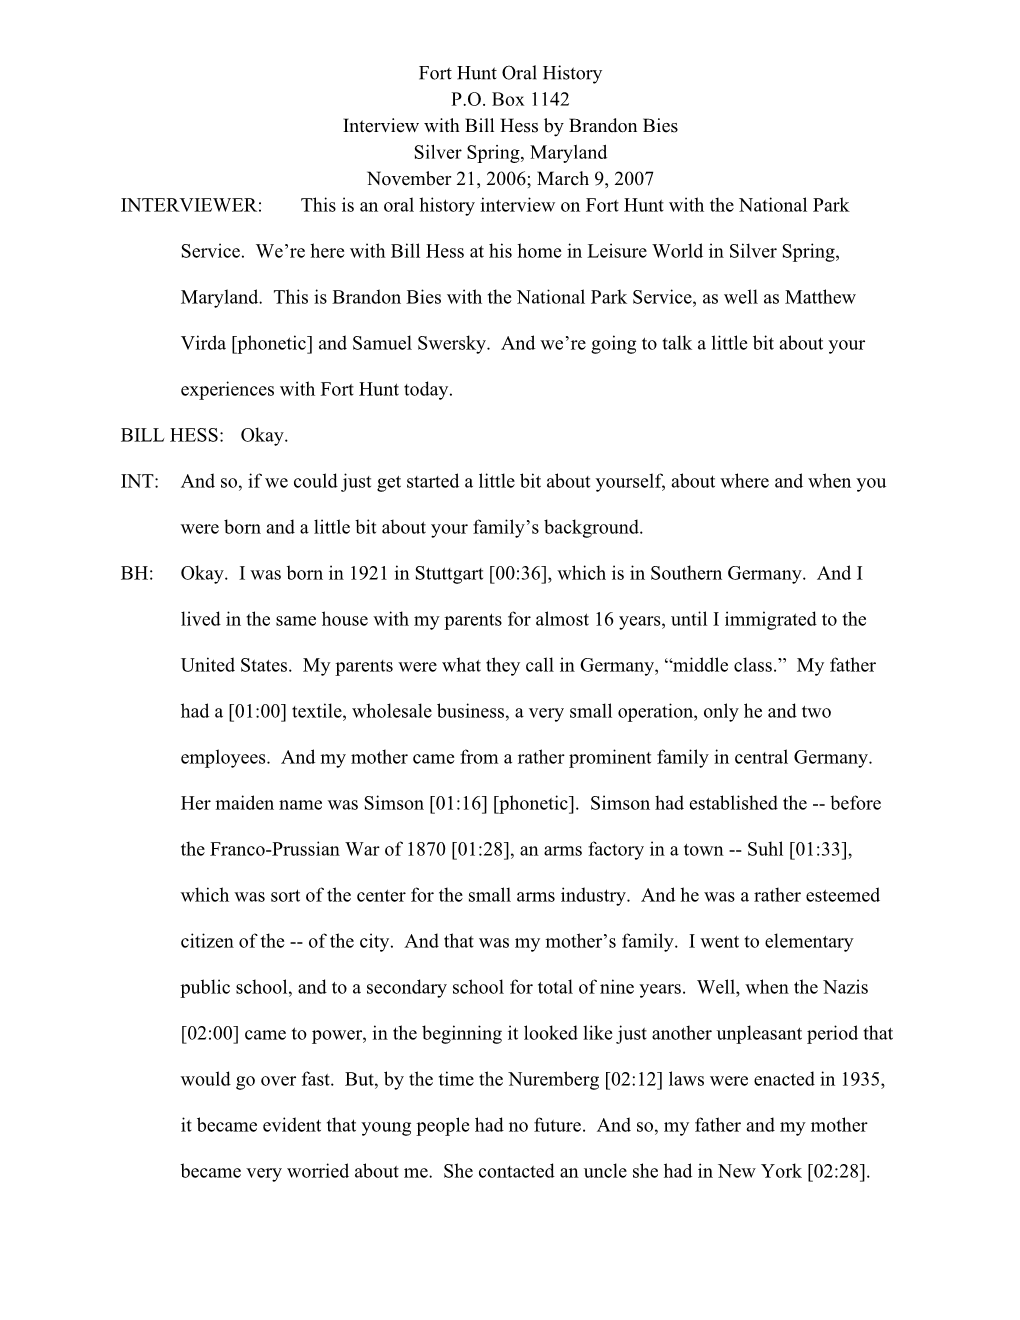 Fort Hunt Oral History Transcript Bill Hess